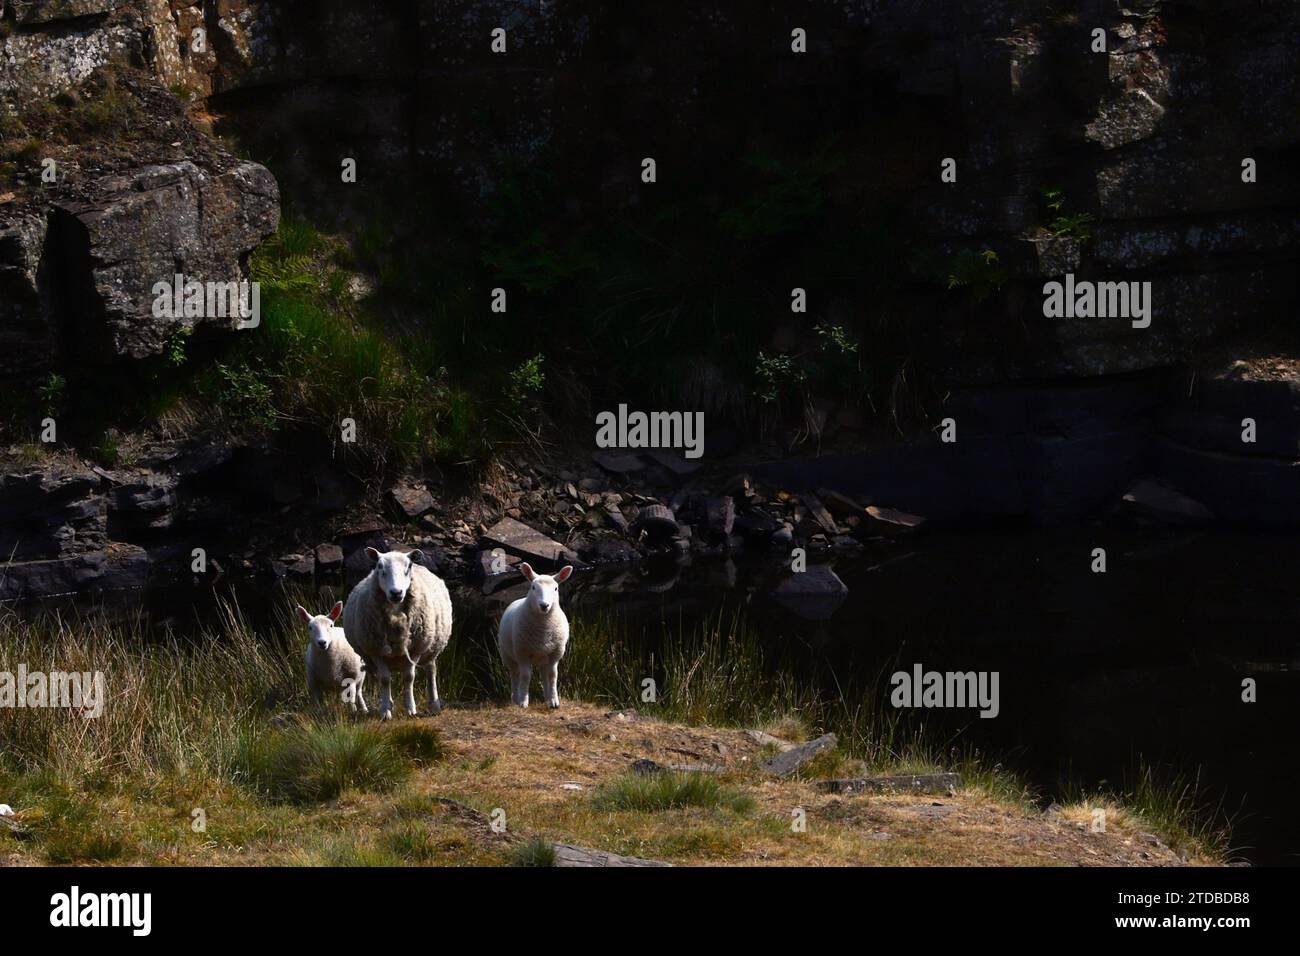 Schafsfamilie vor dunklem Hintergrund zentraler Fokus, der die Entscheidung über die künftige Nachfrage nach Schafen voraussetzt. Konsumverhalten. Stockfoto